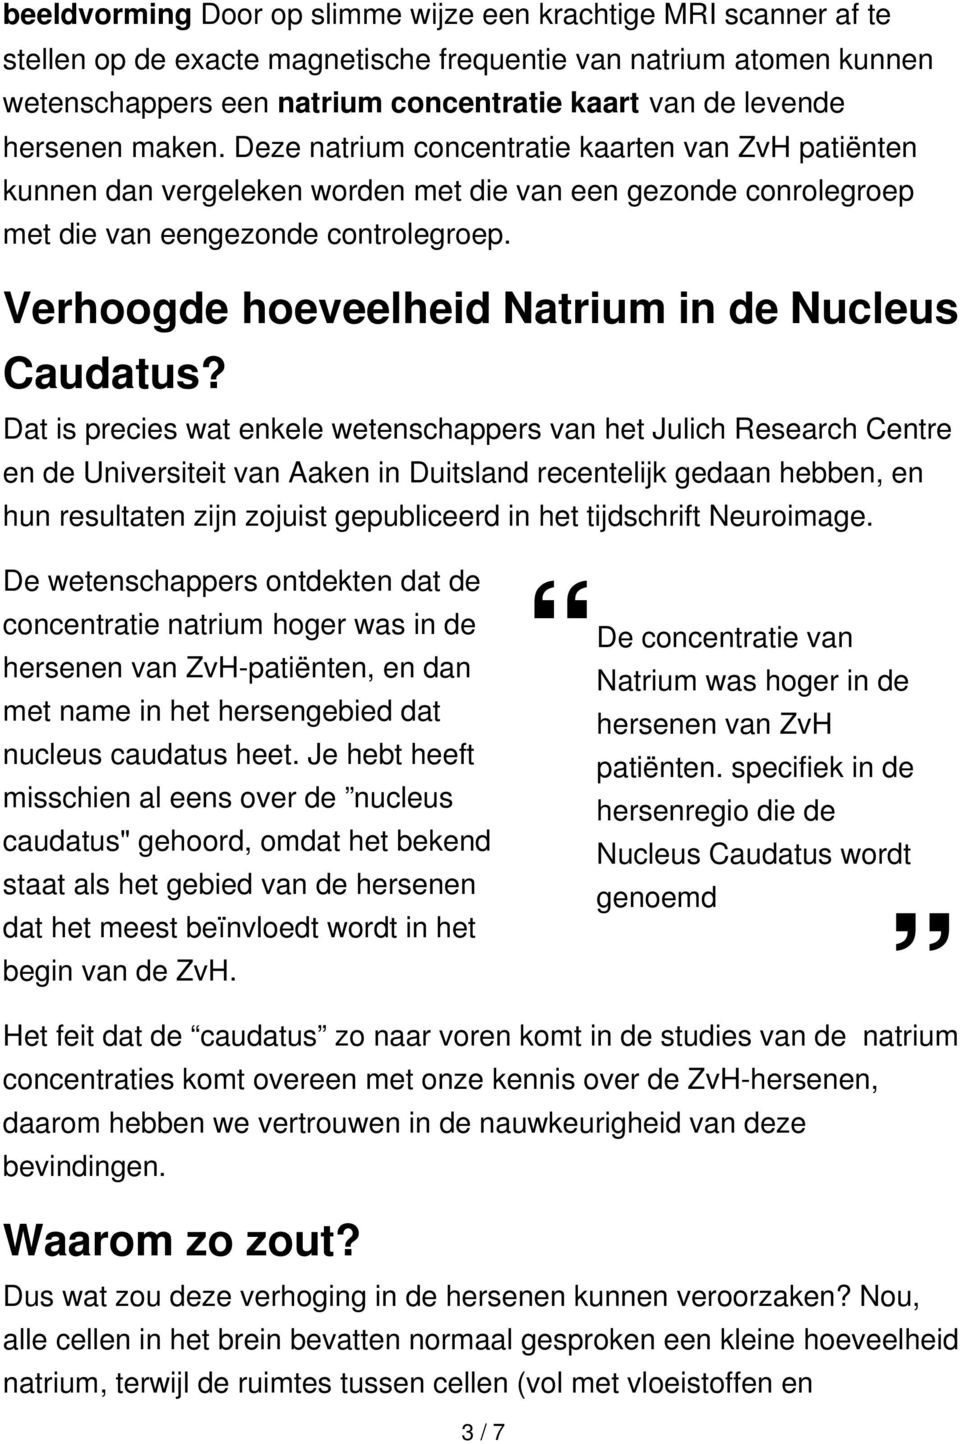 Verhoogde hoeveelheid Natrium in de Nucleus Caudatus?